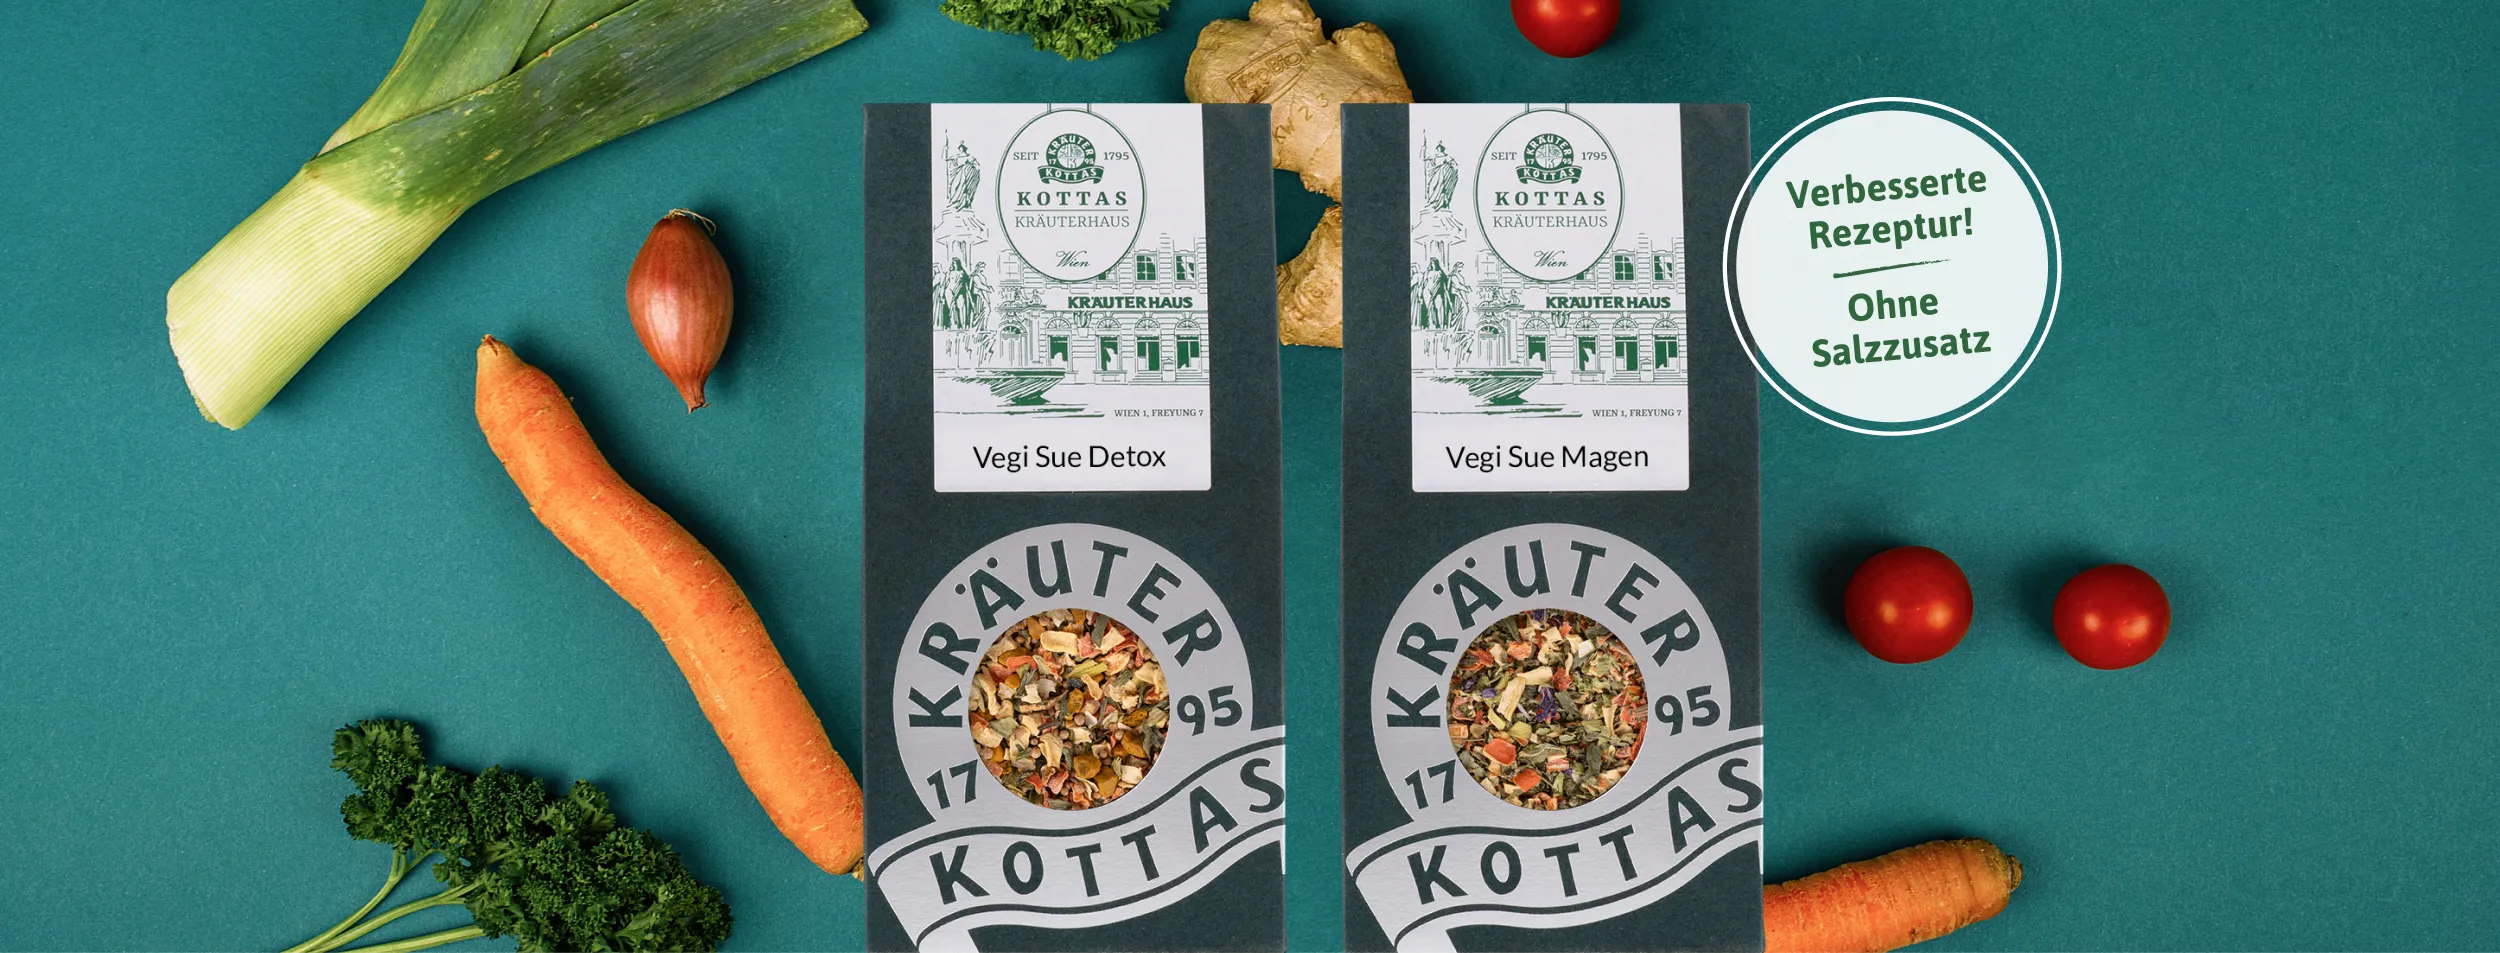 Gemüse auf türkisem Hintergrund mit Vegi Sue Detox-Gemüsetee und Vegi Sue Magen-Tee.